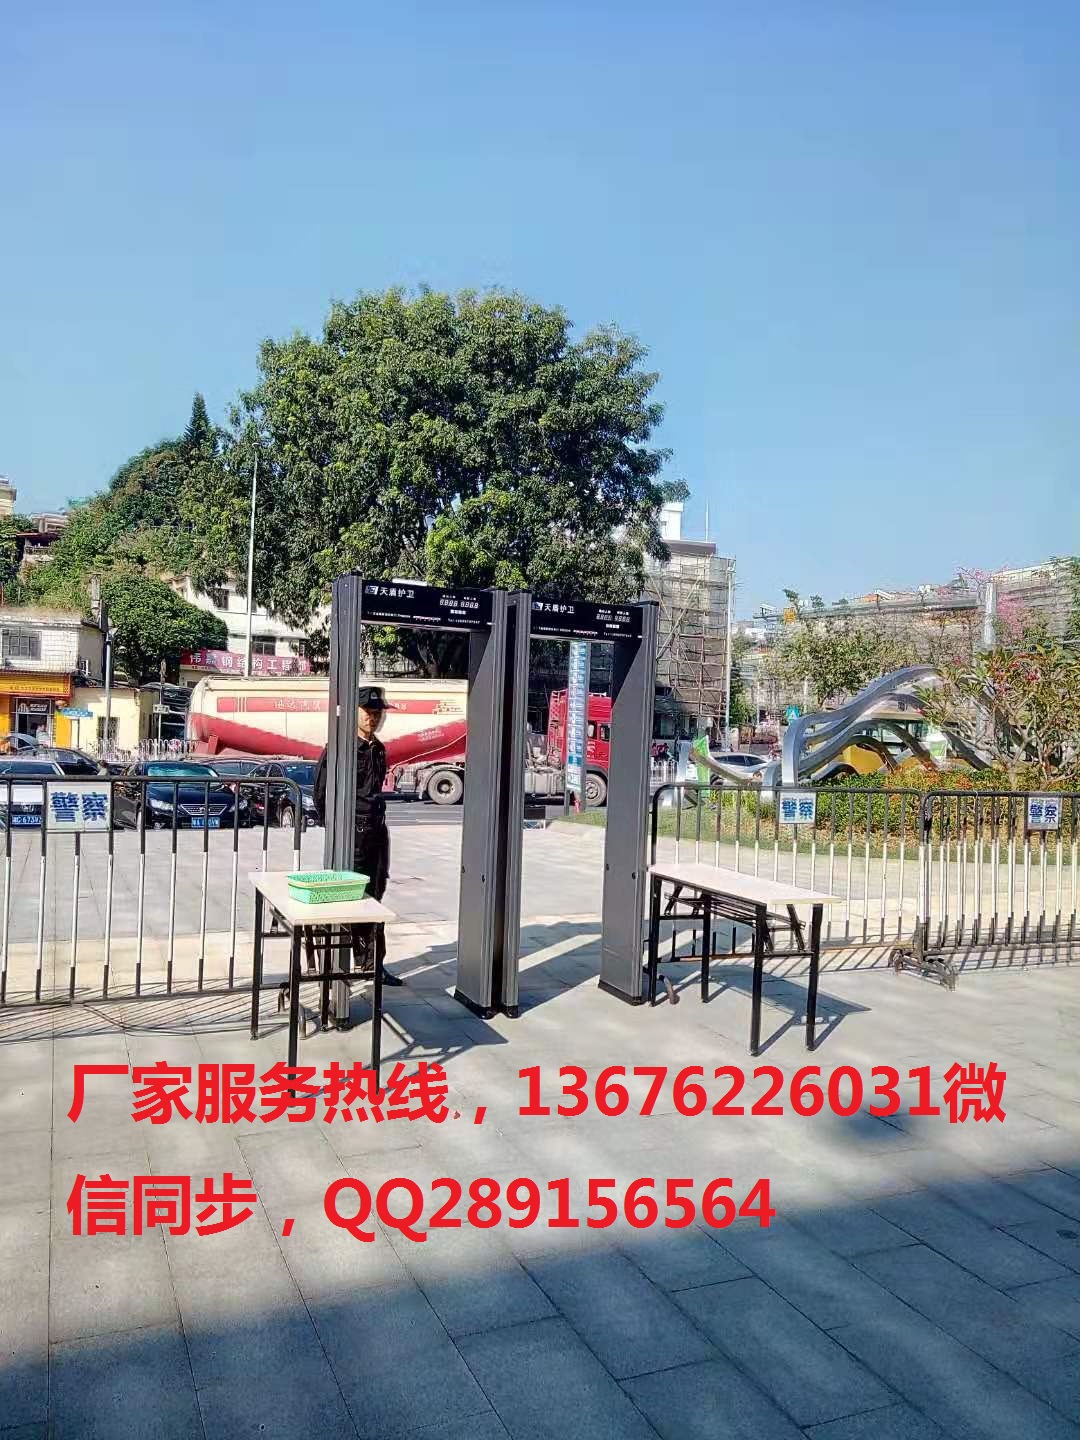 广州安检机安检门专业一体化销售服务 测温安检门